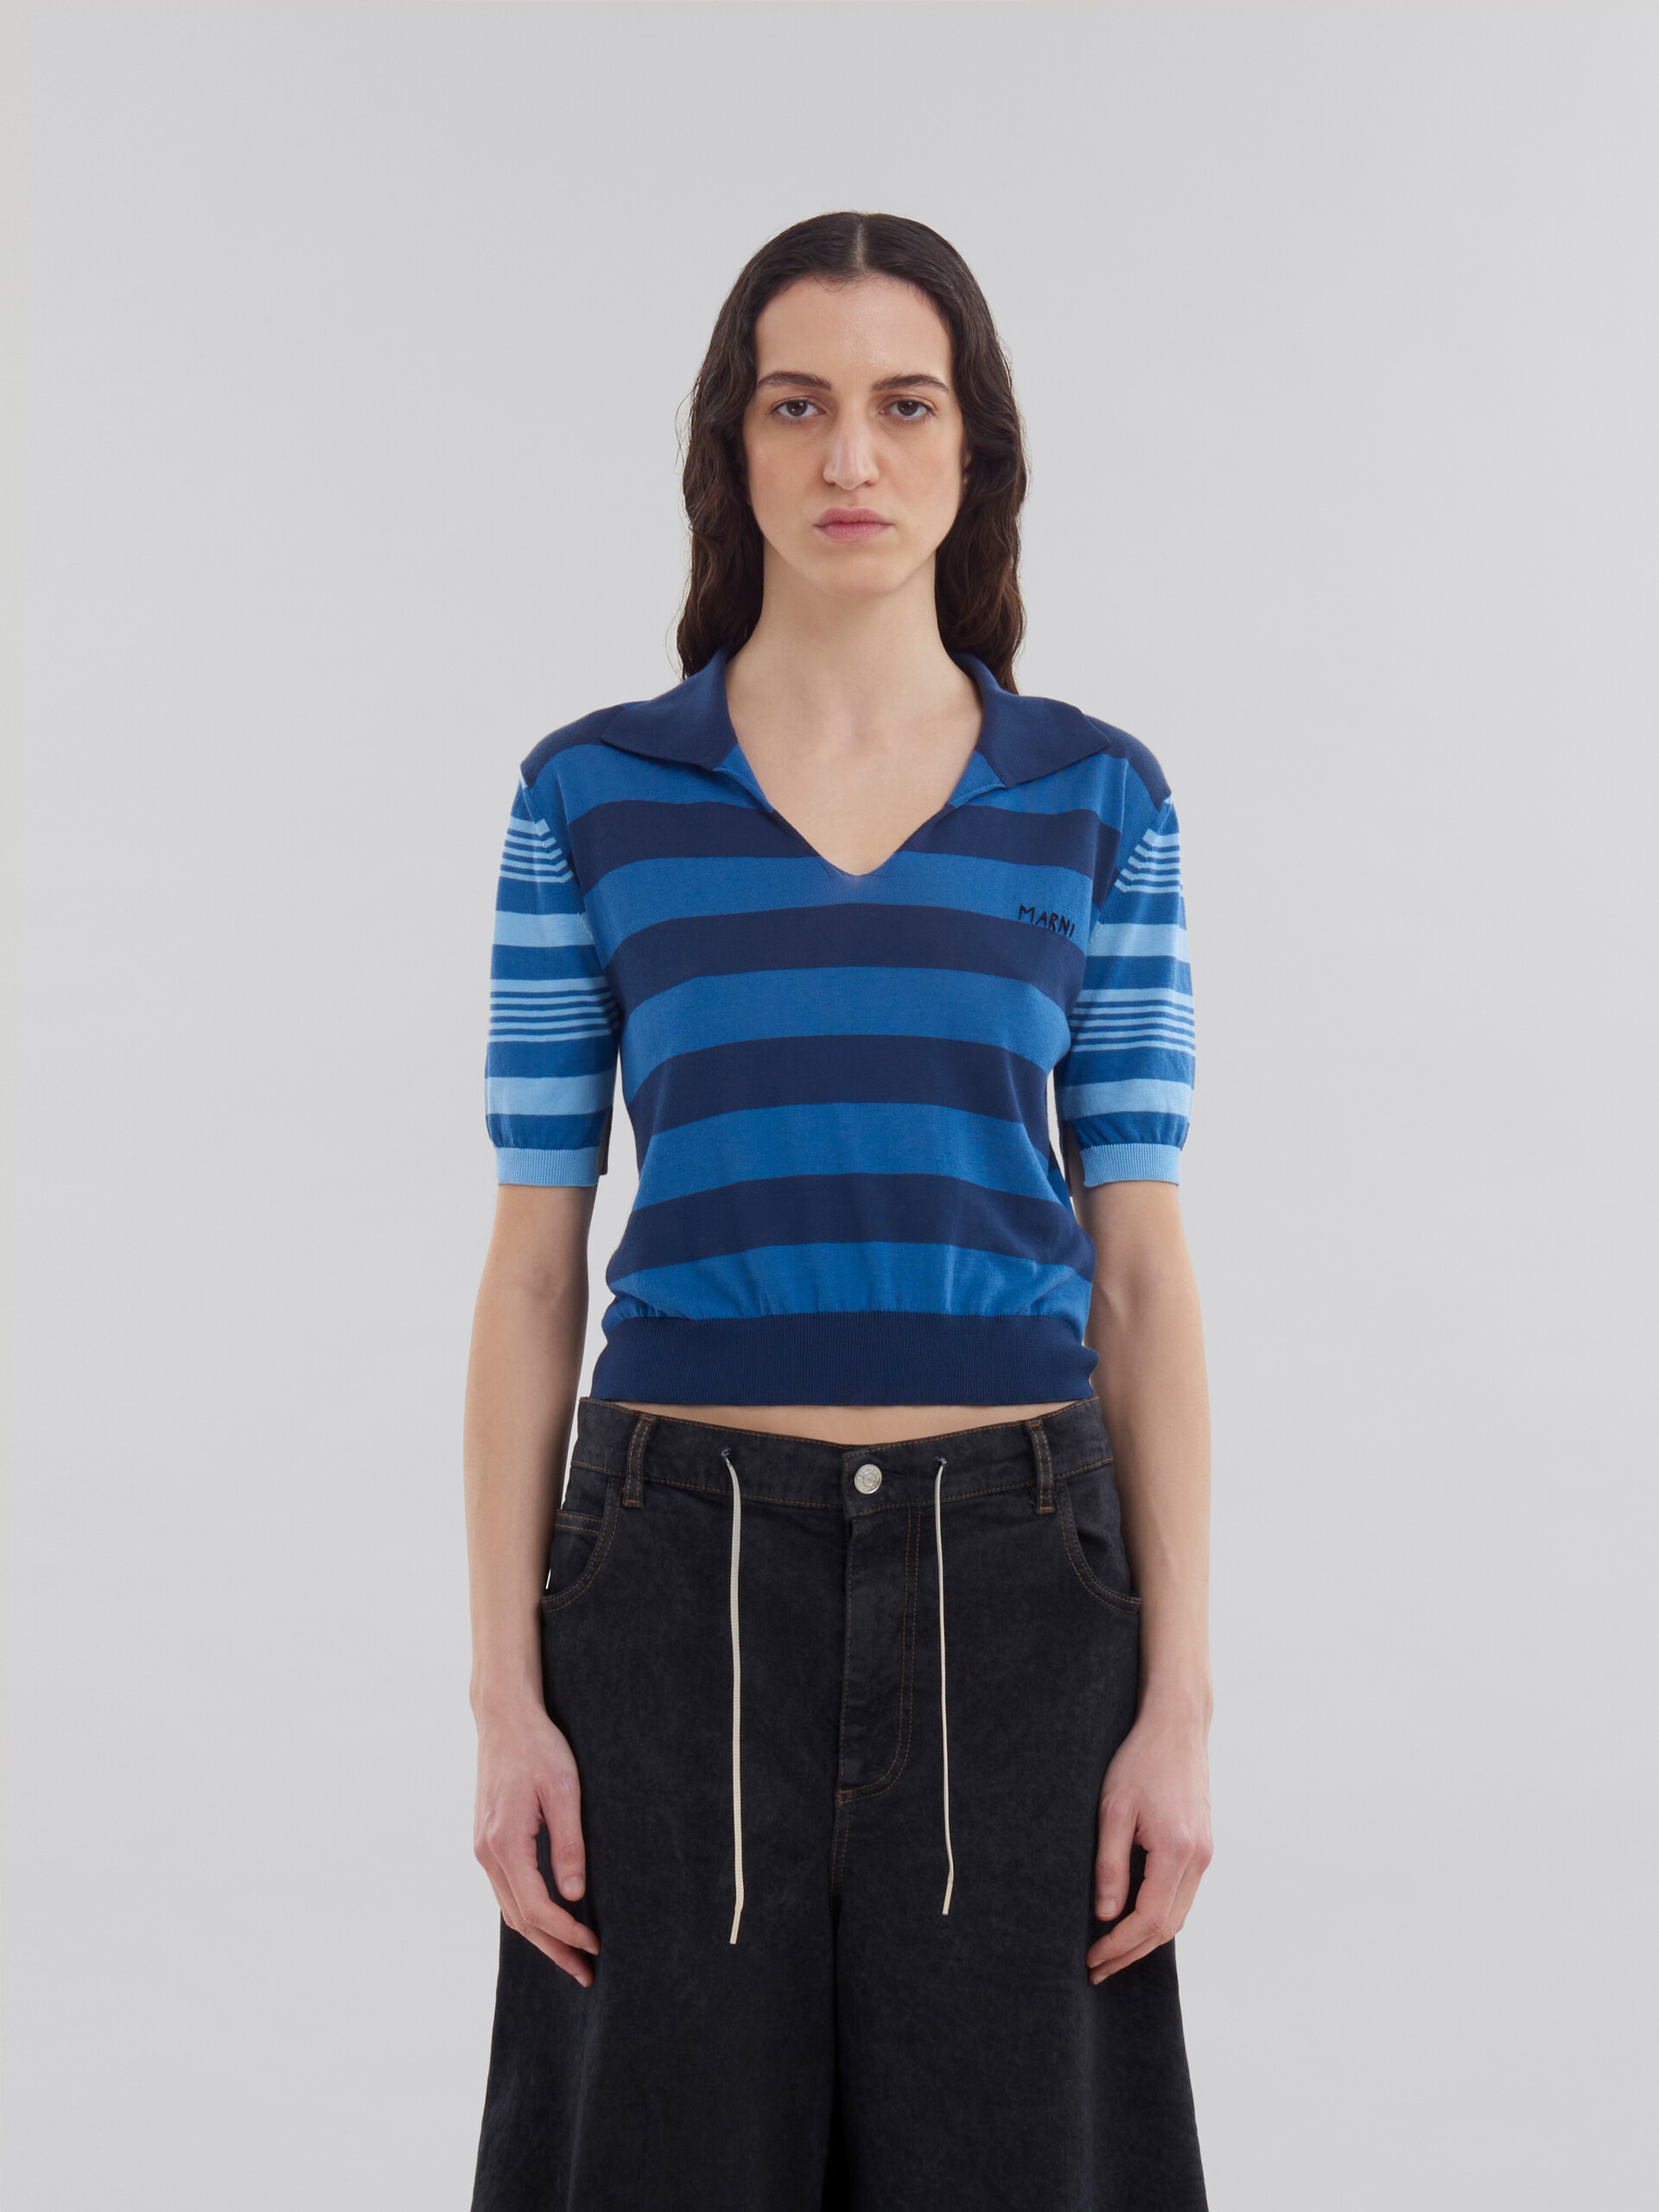 Jersey de manga corta azul de algodón ligero con rayas en contraste - Camisas - Image 2